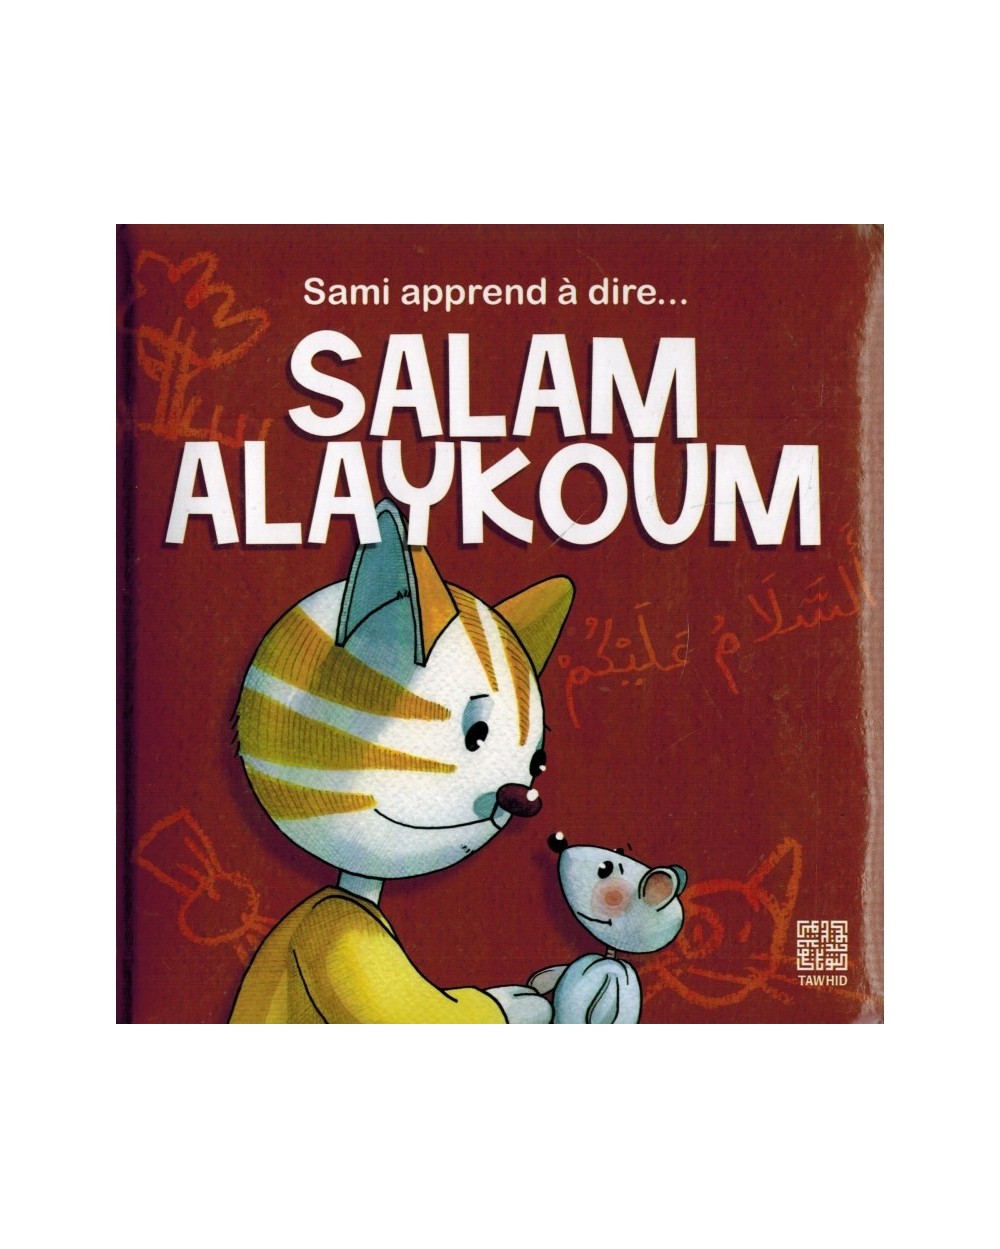 Sami book learns to say Salam aleykoum